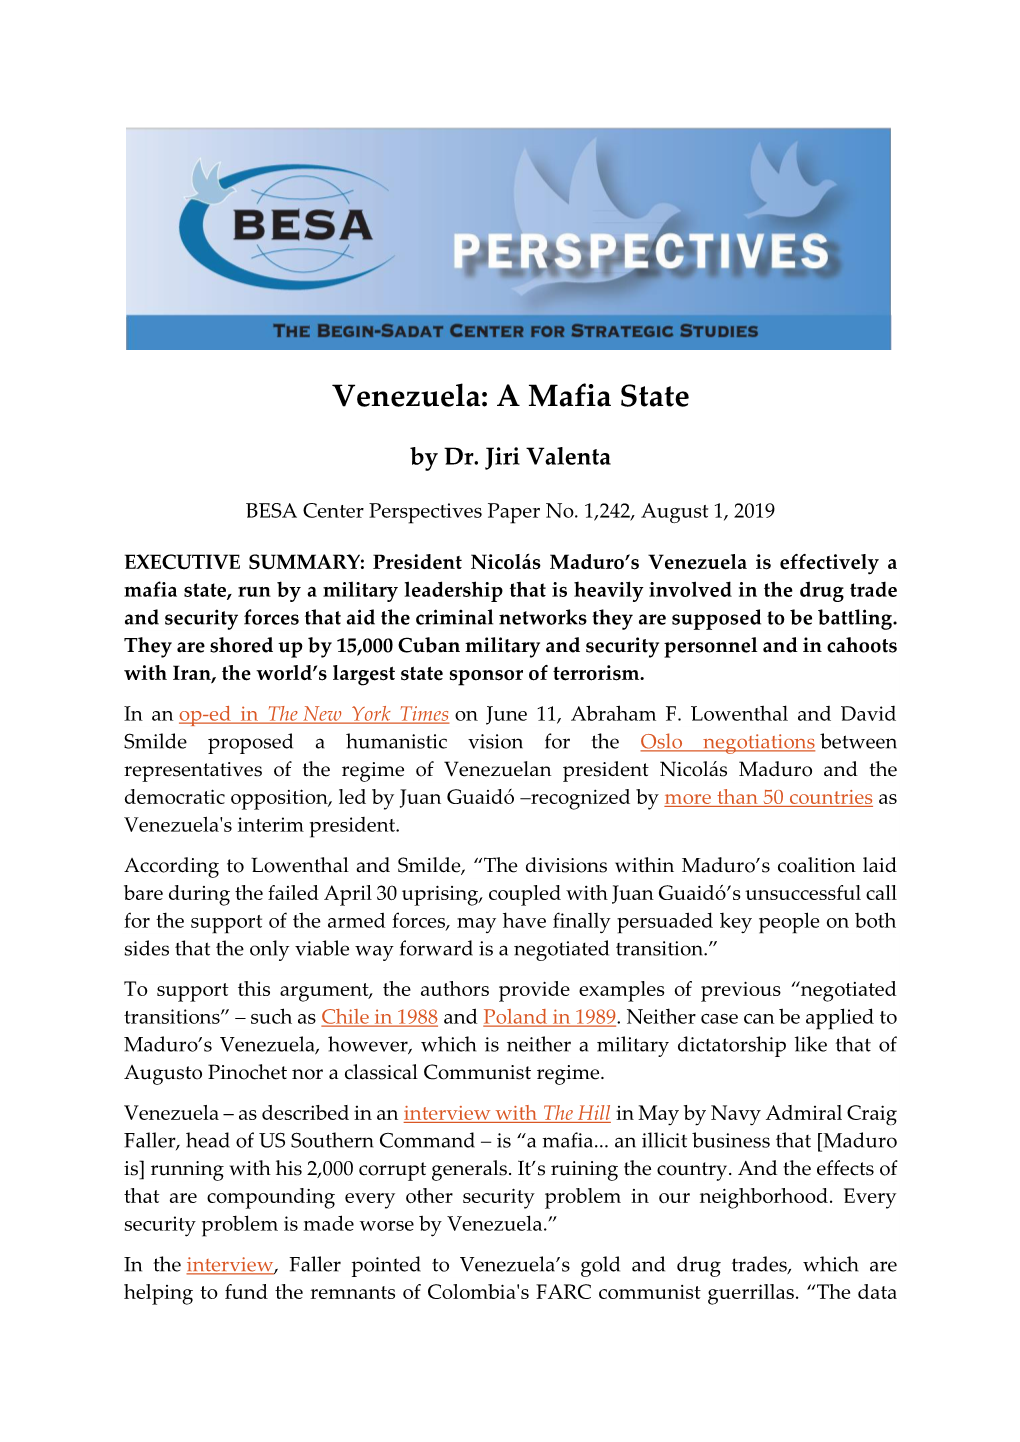 Venezuela: a Mafia State